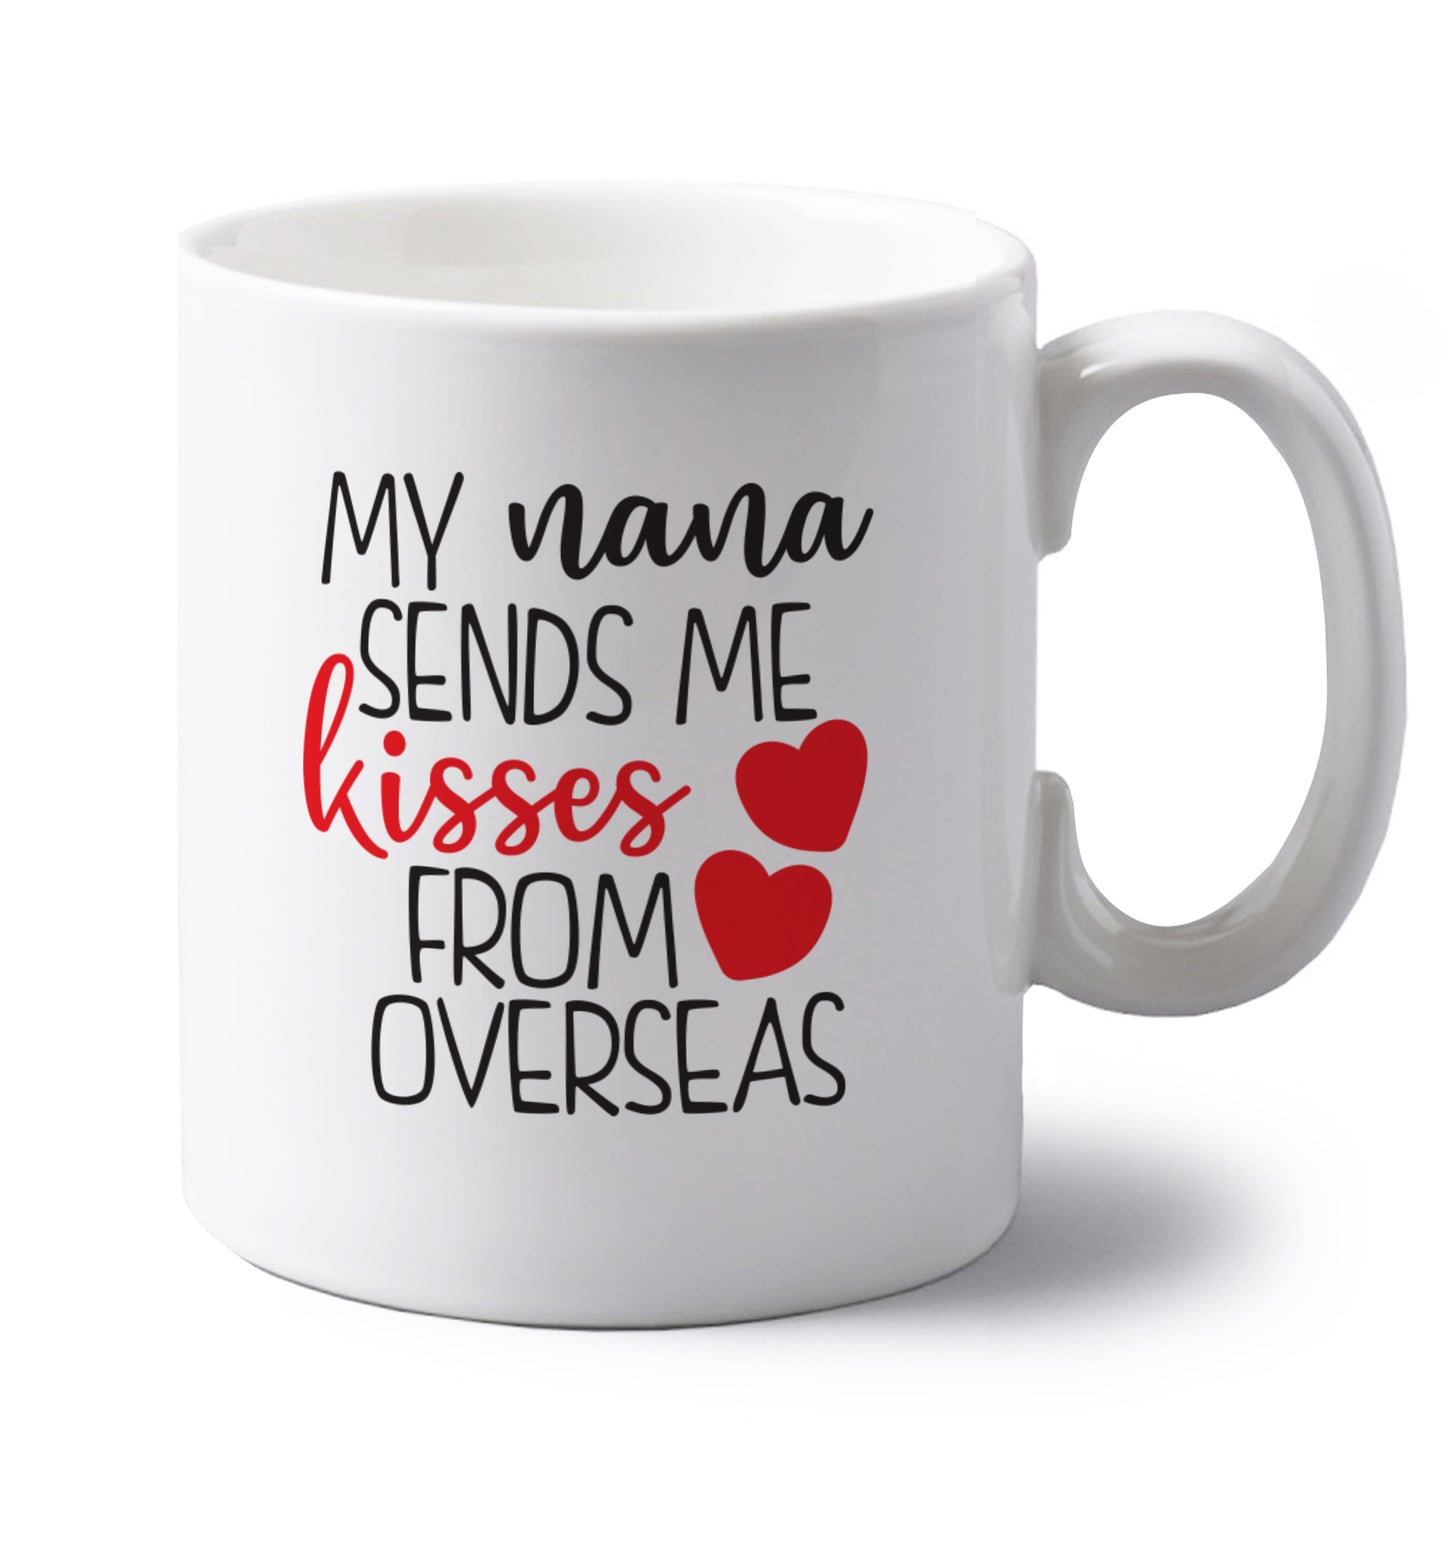 My nana sends me kisses from overseas left handed white ceramic mug 